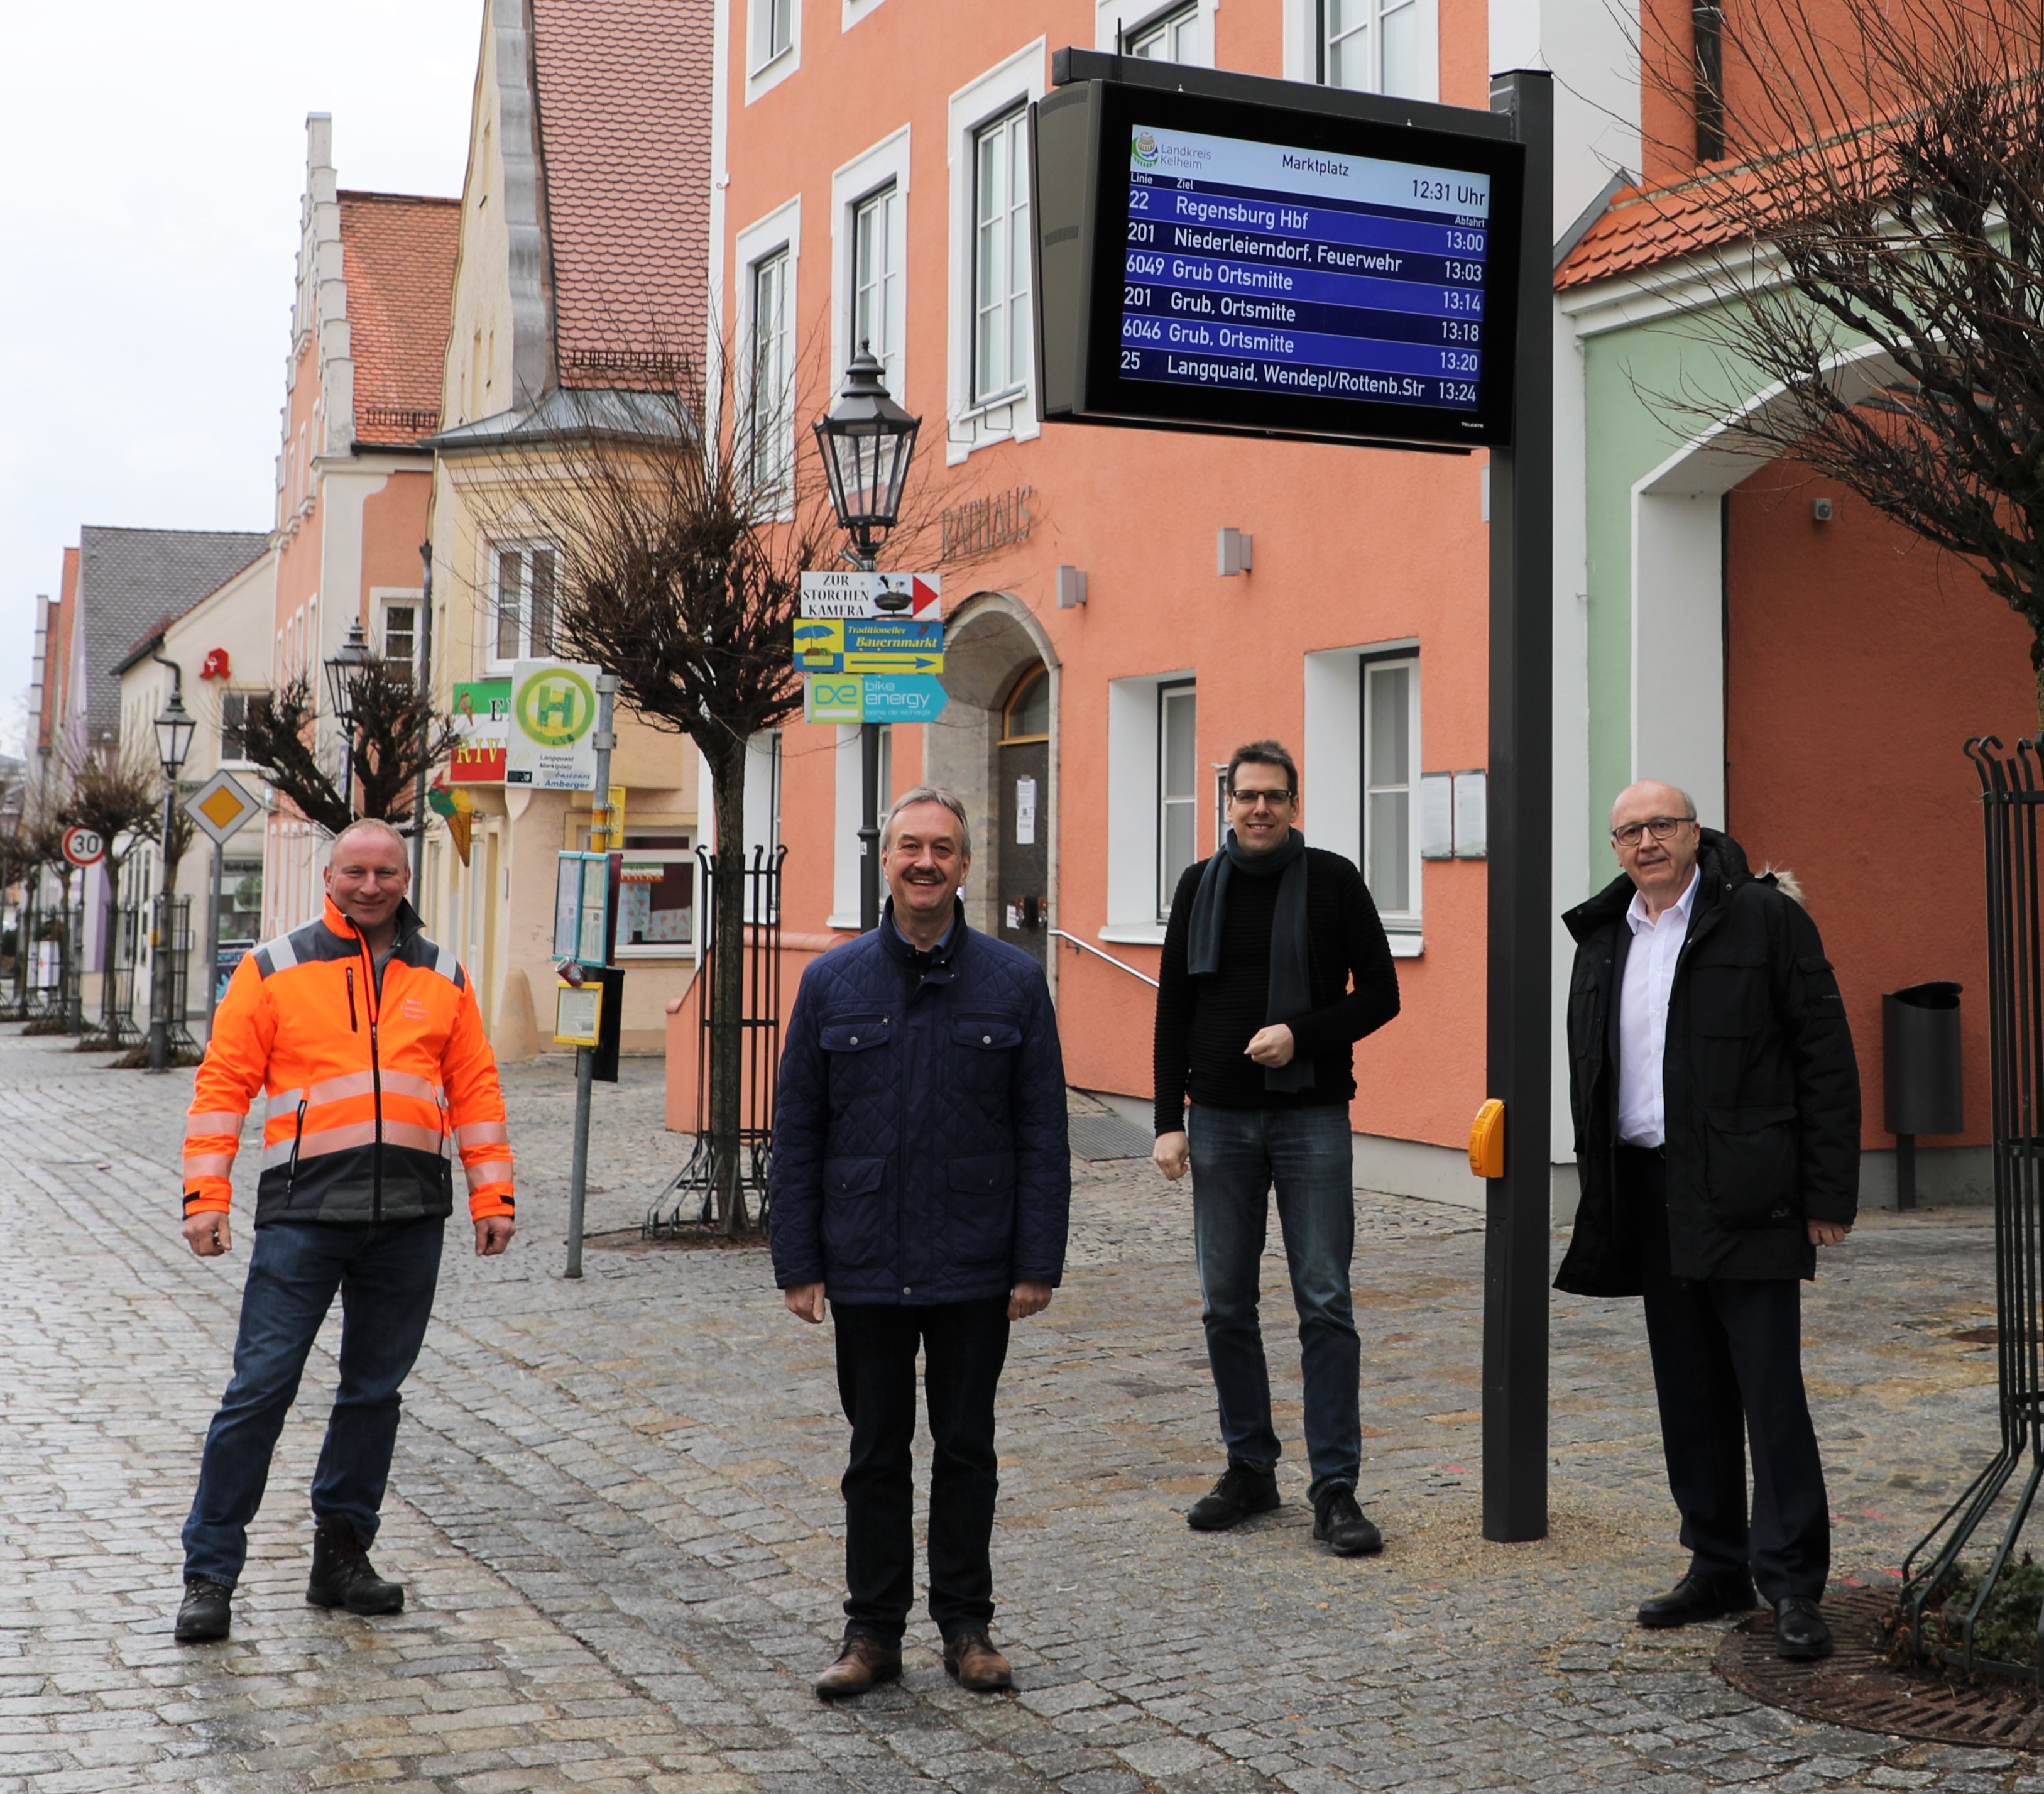 Weitere Haltestellen in Neustadt a.d. Donau und Langquaid mit DFI-Anzeigern ausgestattet